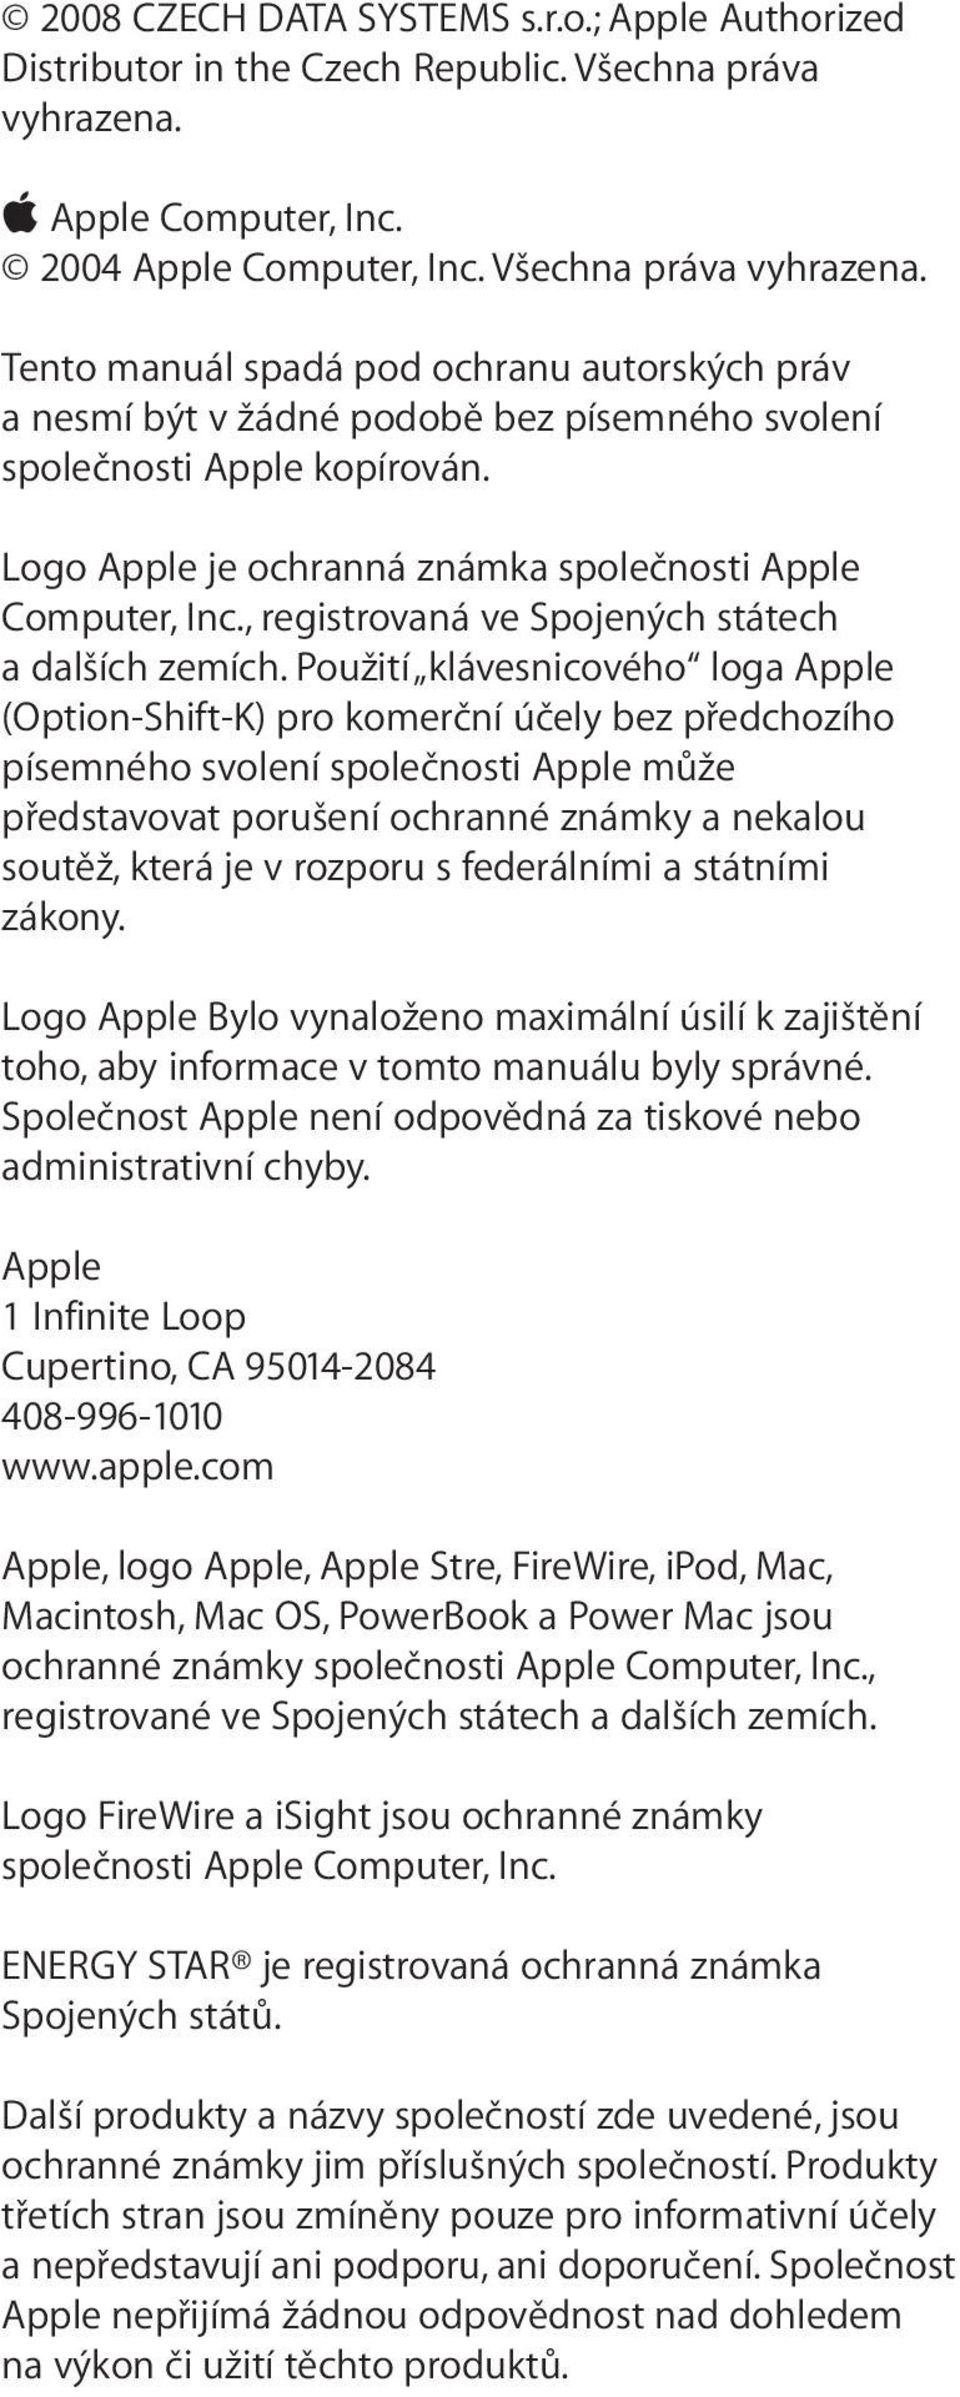 Logo Apple je ochranná známka společnosti Apple Computer, Inc., registrovaná ve Spojených státech a dalších zemích.